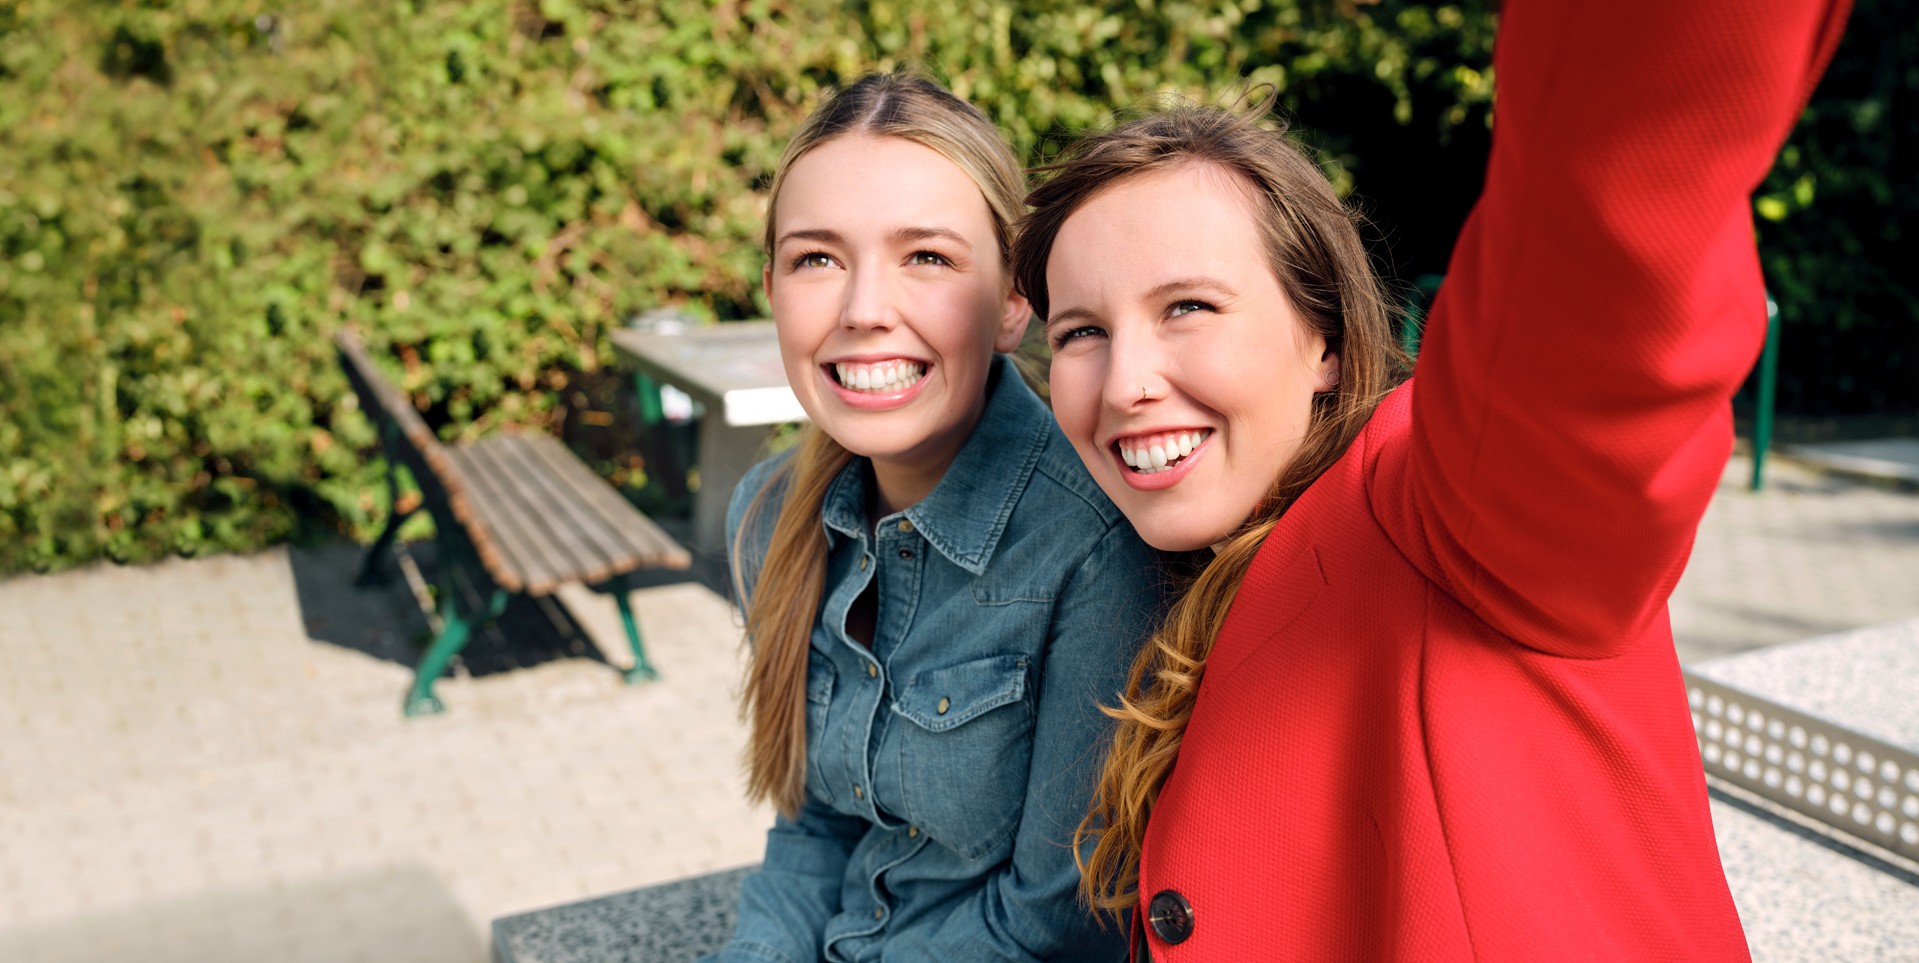 Die Auszubildenden Alina und Josi sitzen in einem Park auf einer Tischtennisplatt und machen gemeinsam ein Selfie.